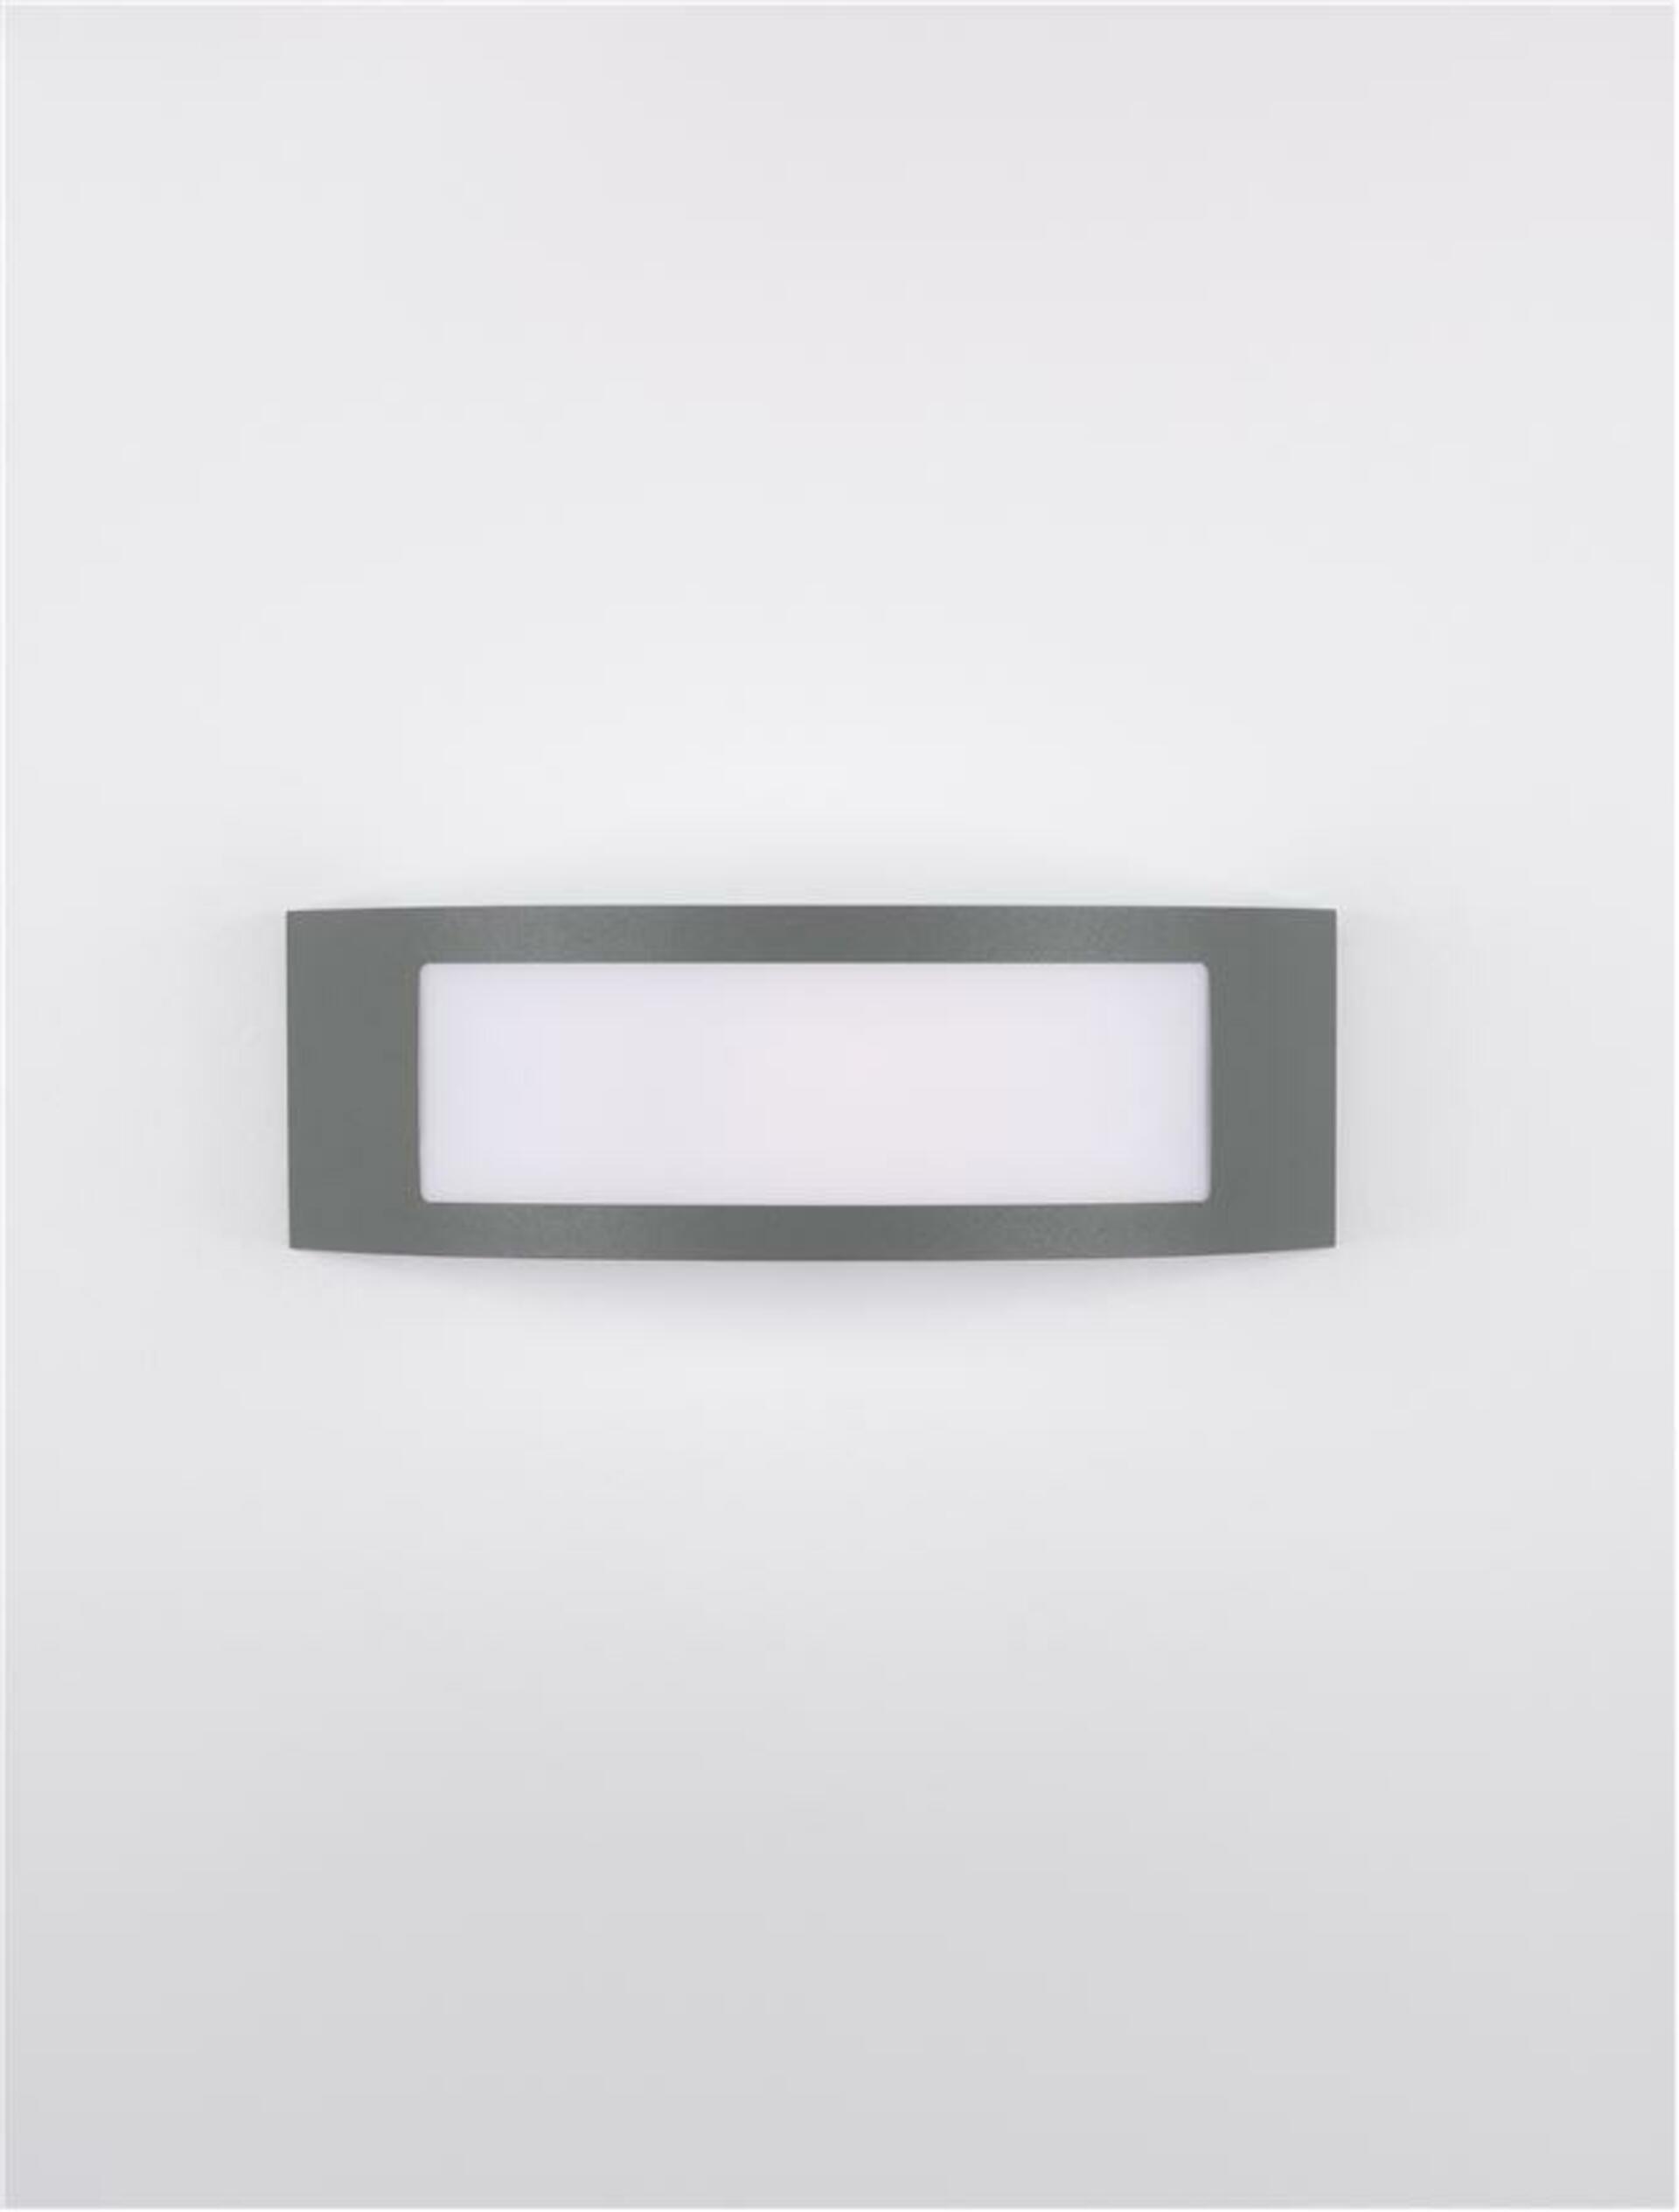 NOVA LUCE venkovní nástěnné svítidlo ZENITH tmavě šedý hliník akrylový difuzor proti oslnění E27 1x12W 220-240V bez žárovky IP44 9020933